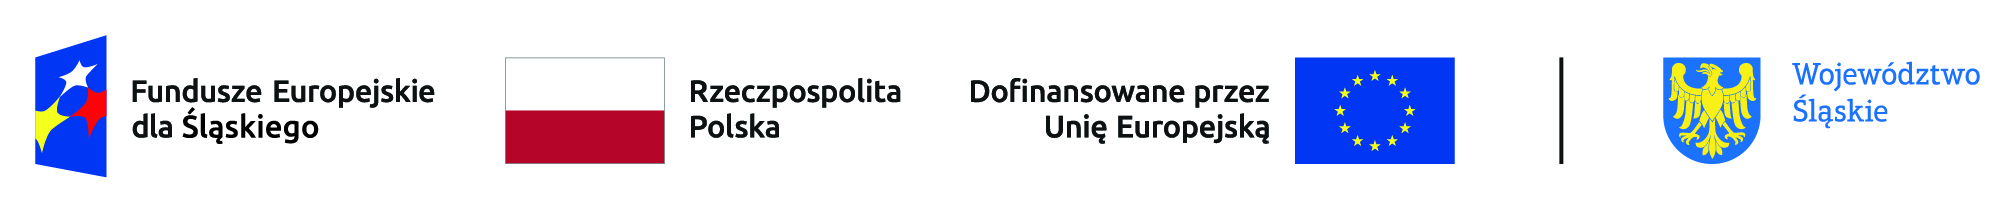 Loga: Fundusze Europejskie dla Śląskiego, Rzeczpospolita Polska, Dofinansowane przez Unię Europejską, Województwo Śląskie.